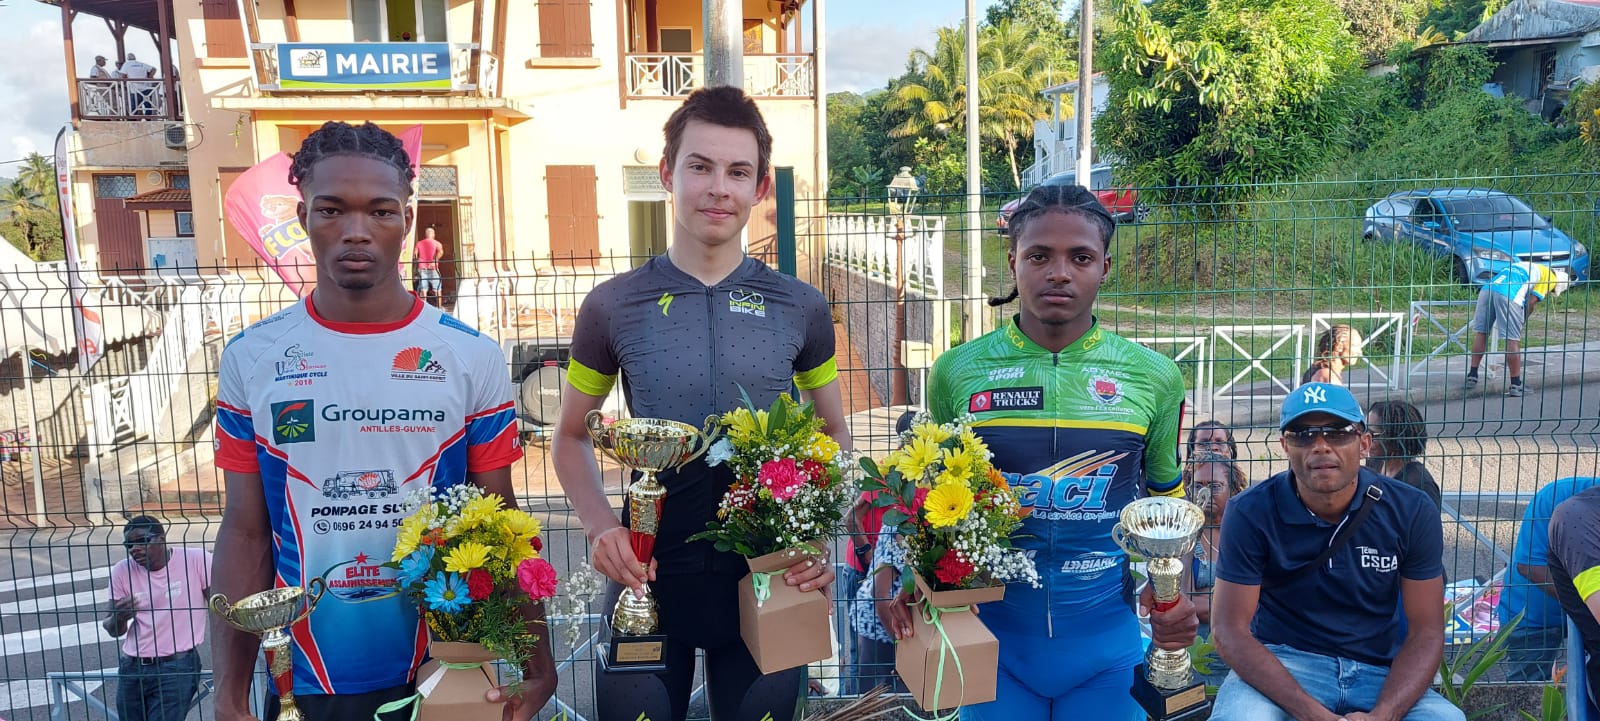     2ème étape du Tour Cycliste Junior de Martinique : victoire d’Herbaud, Louison en jaune

